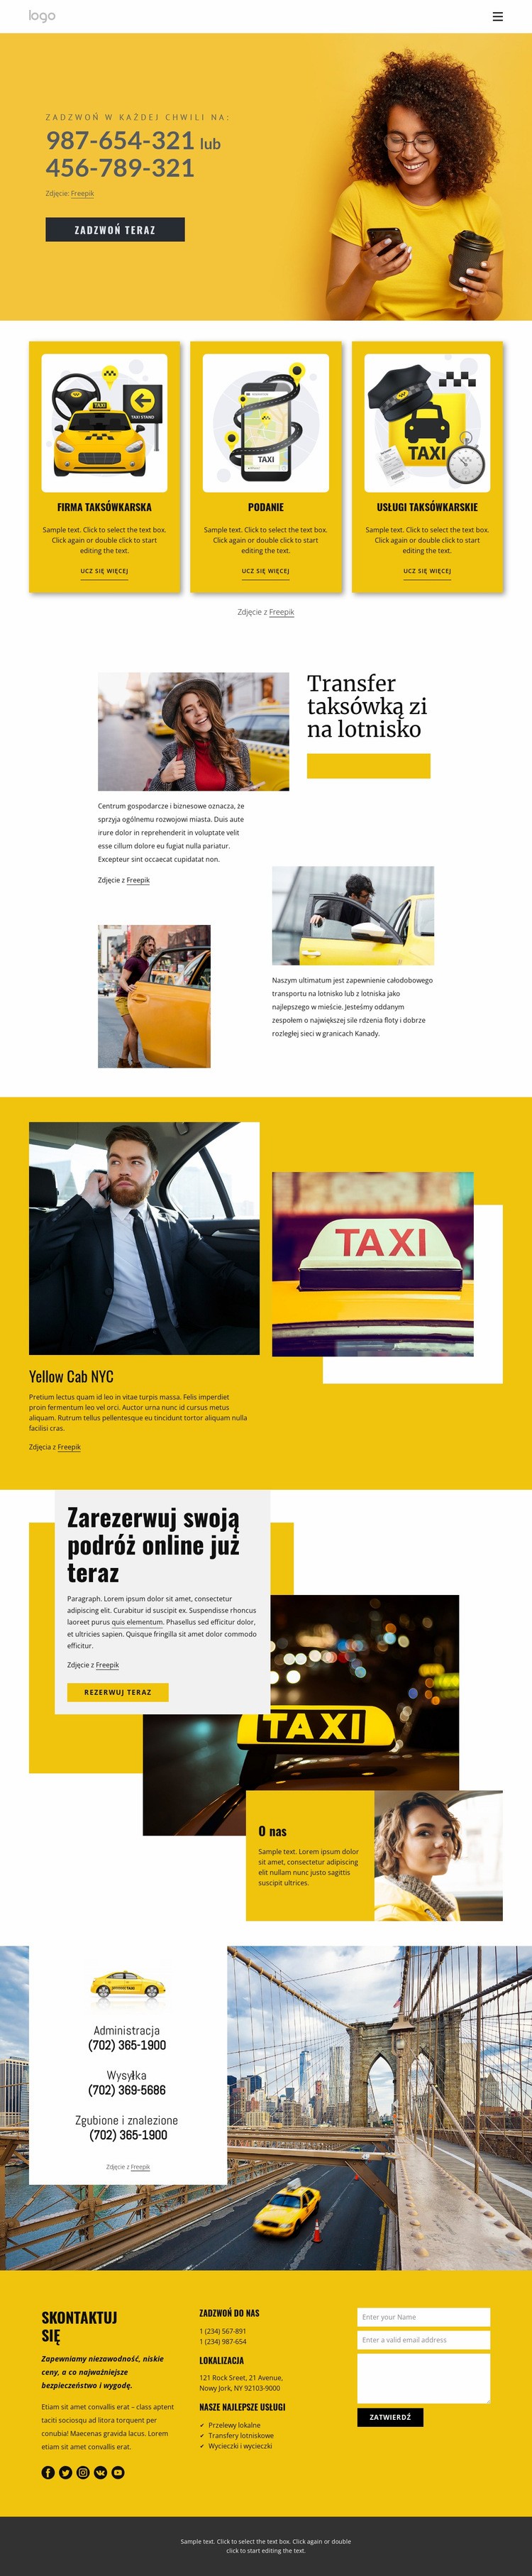 Jakość usług taksówkowych Projekt strony internetowej